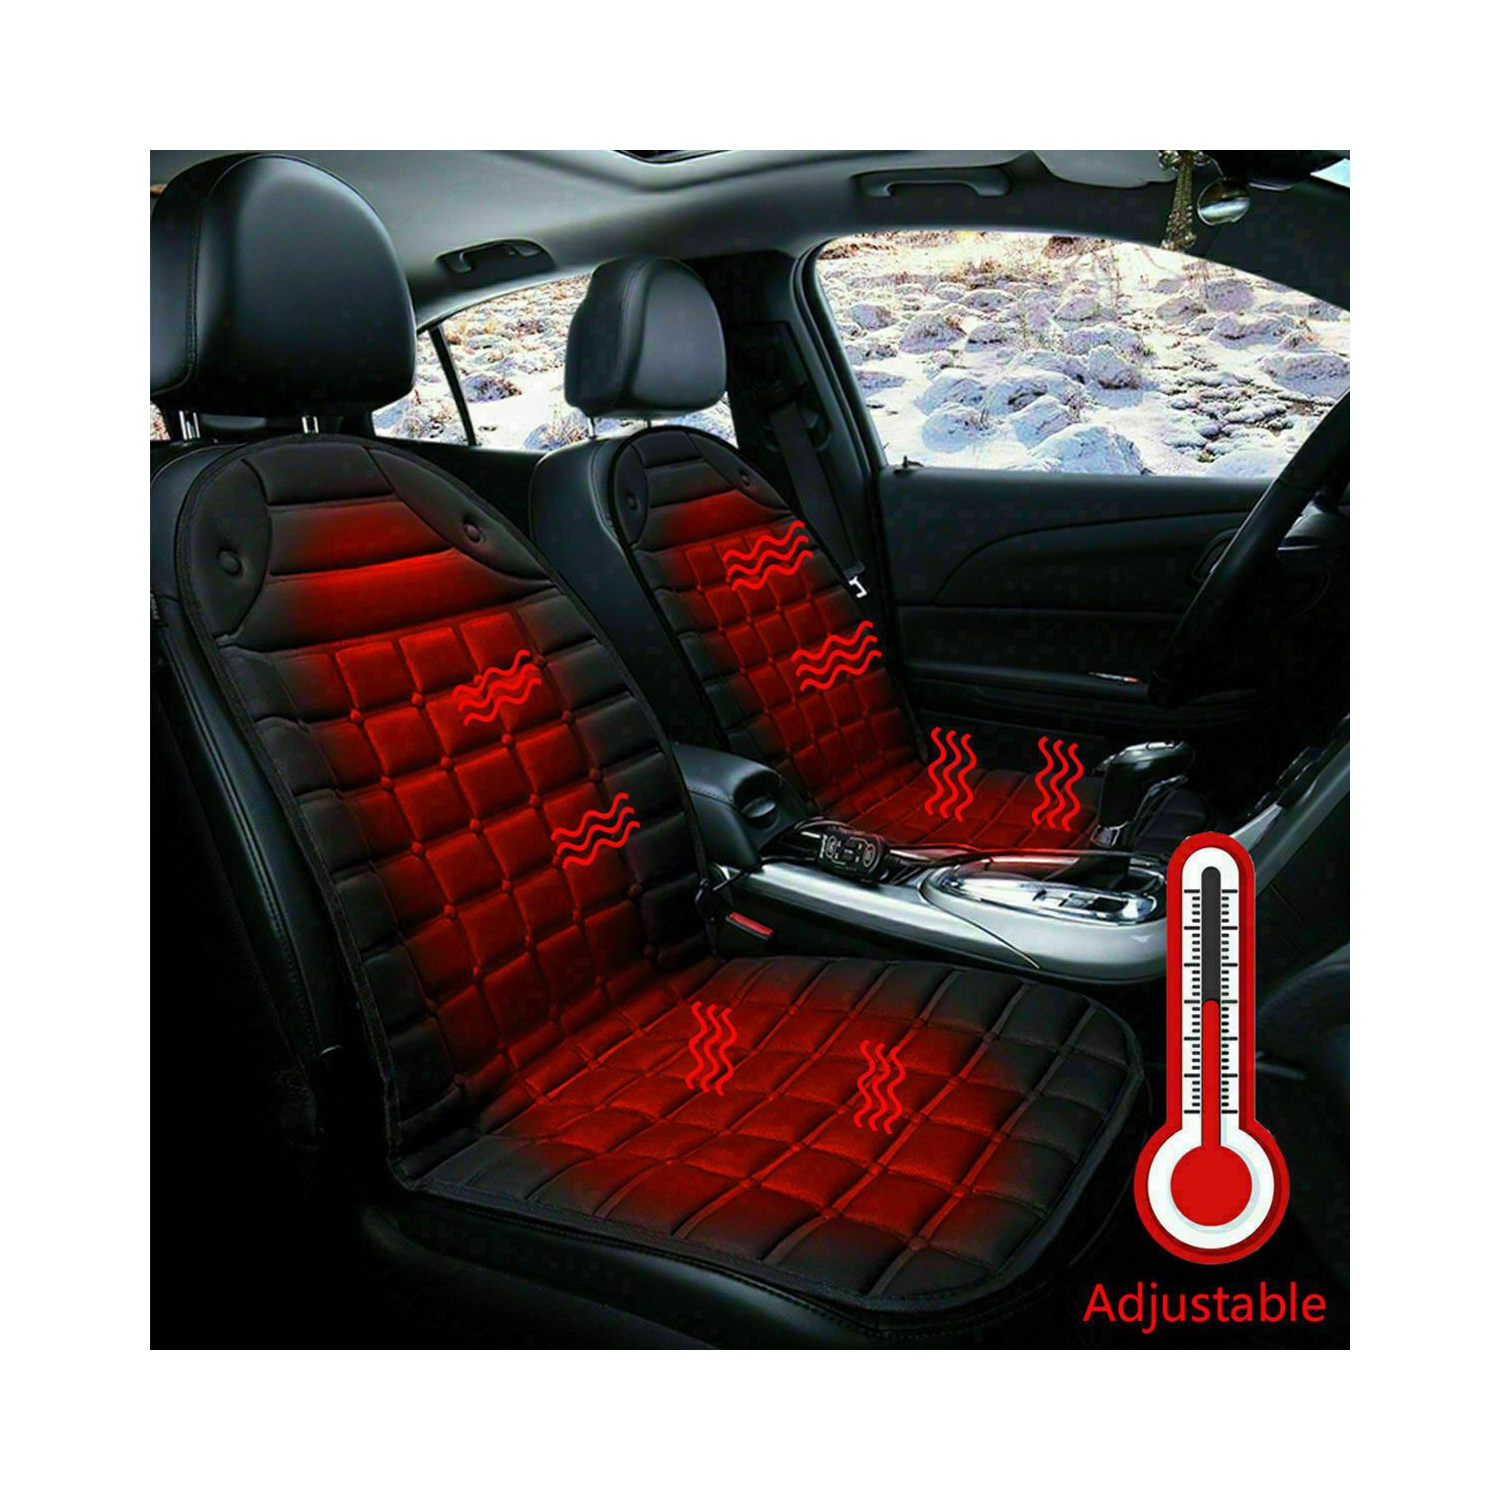 Premium housse de siège chauffante, modèle Caldo - Dossier et assise  chauffants individuellement, 2 niveaux de chauffage au choix, chauffage de  siège auto avec prise 12 volts, Coussin de siège